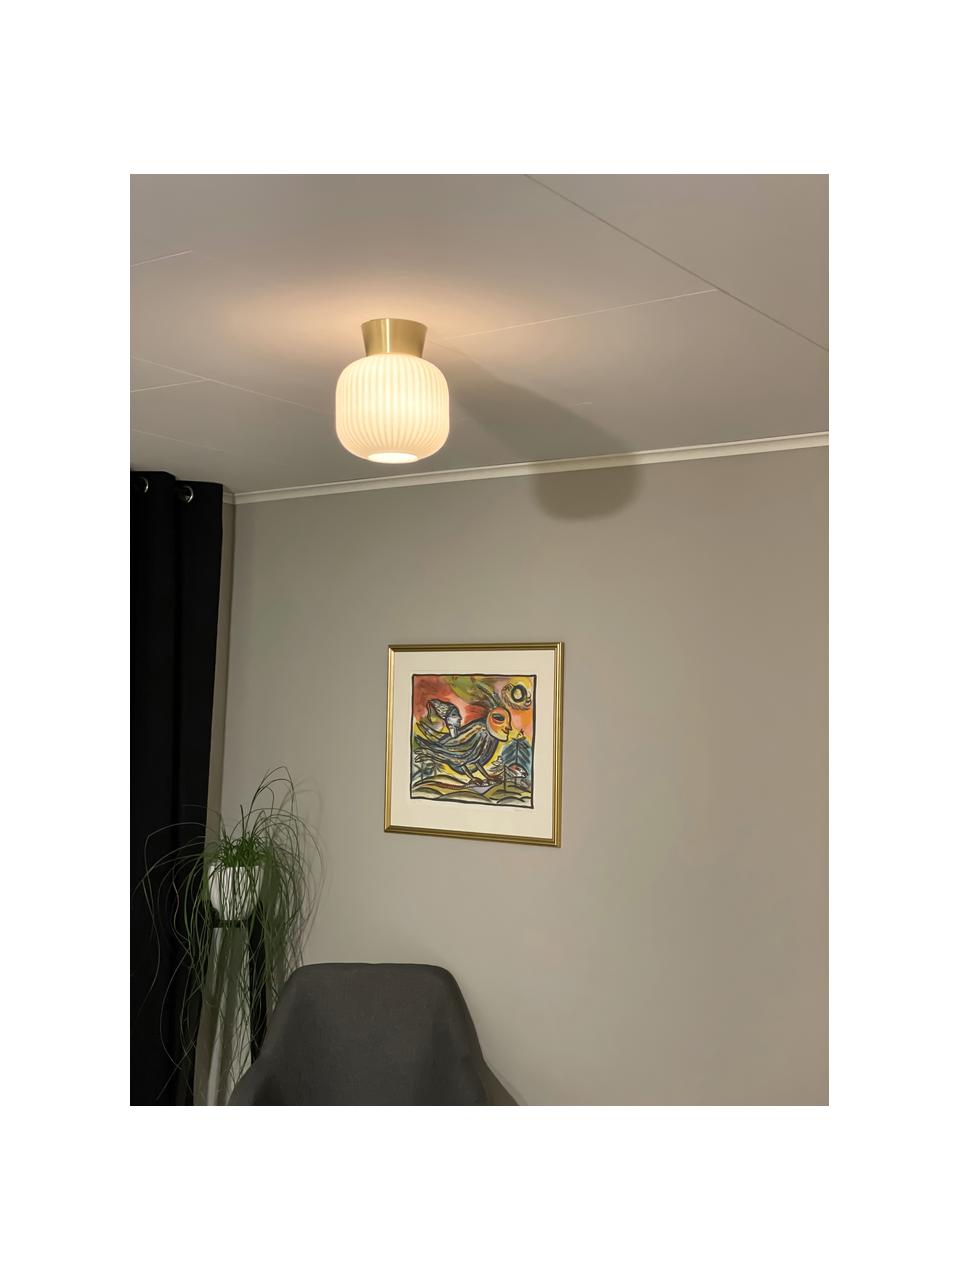 Lampa sufitowa ze szkła  Vanja, Biały, odcienie złotego, Ø 20 x W 24 cm